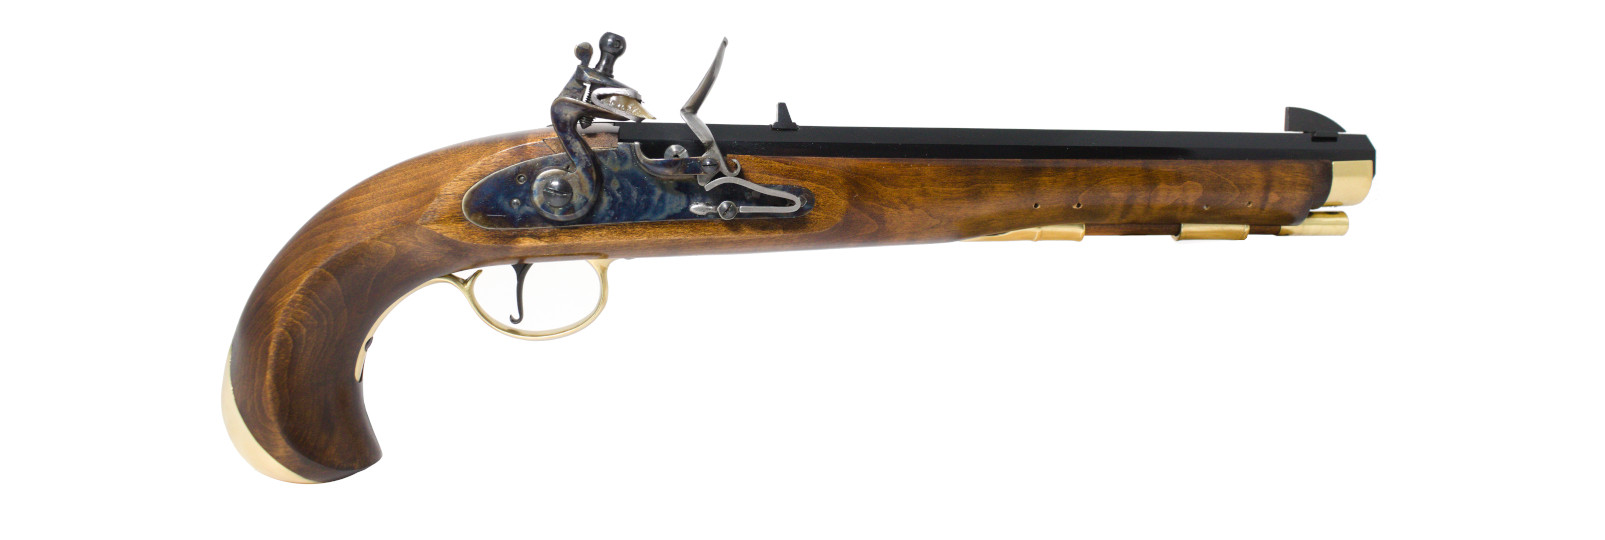 Navy Moll Pistol flintlock model